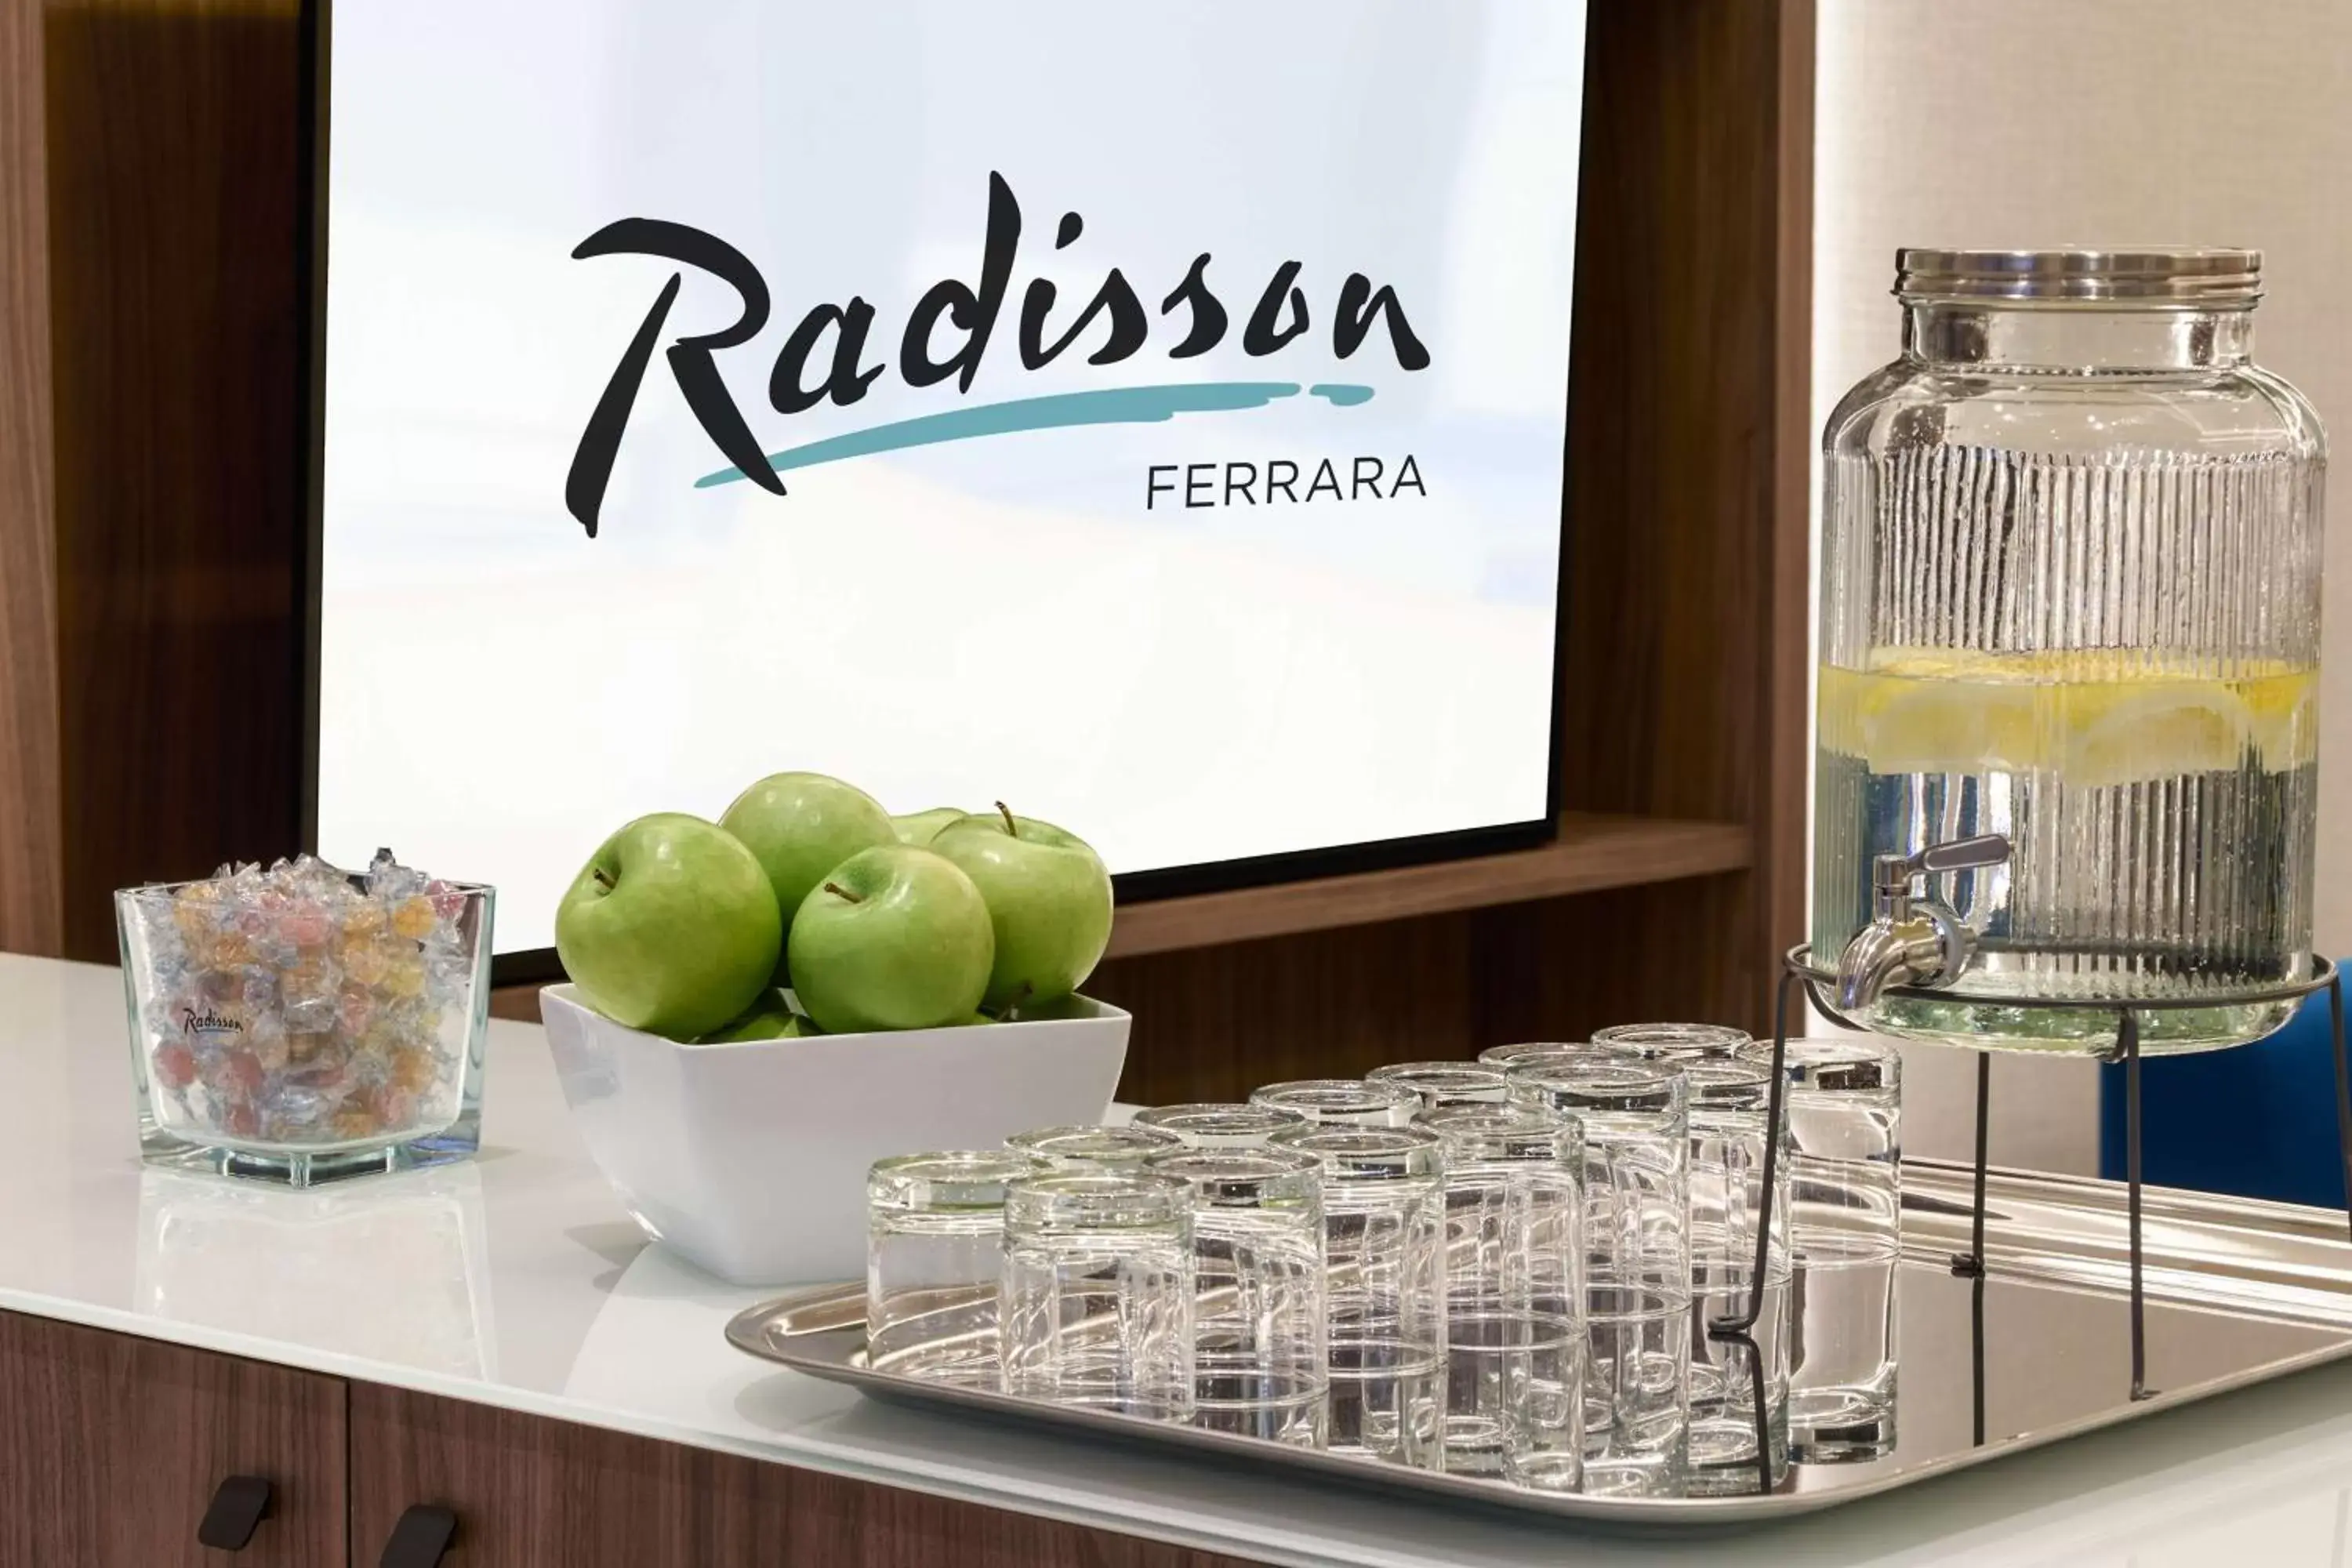 Lobby or reception in Radisson Hotel Ferrara